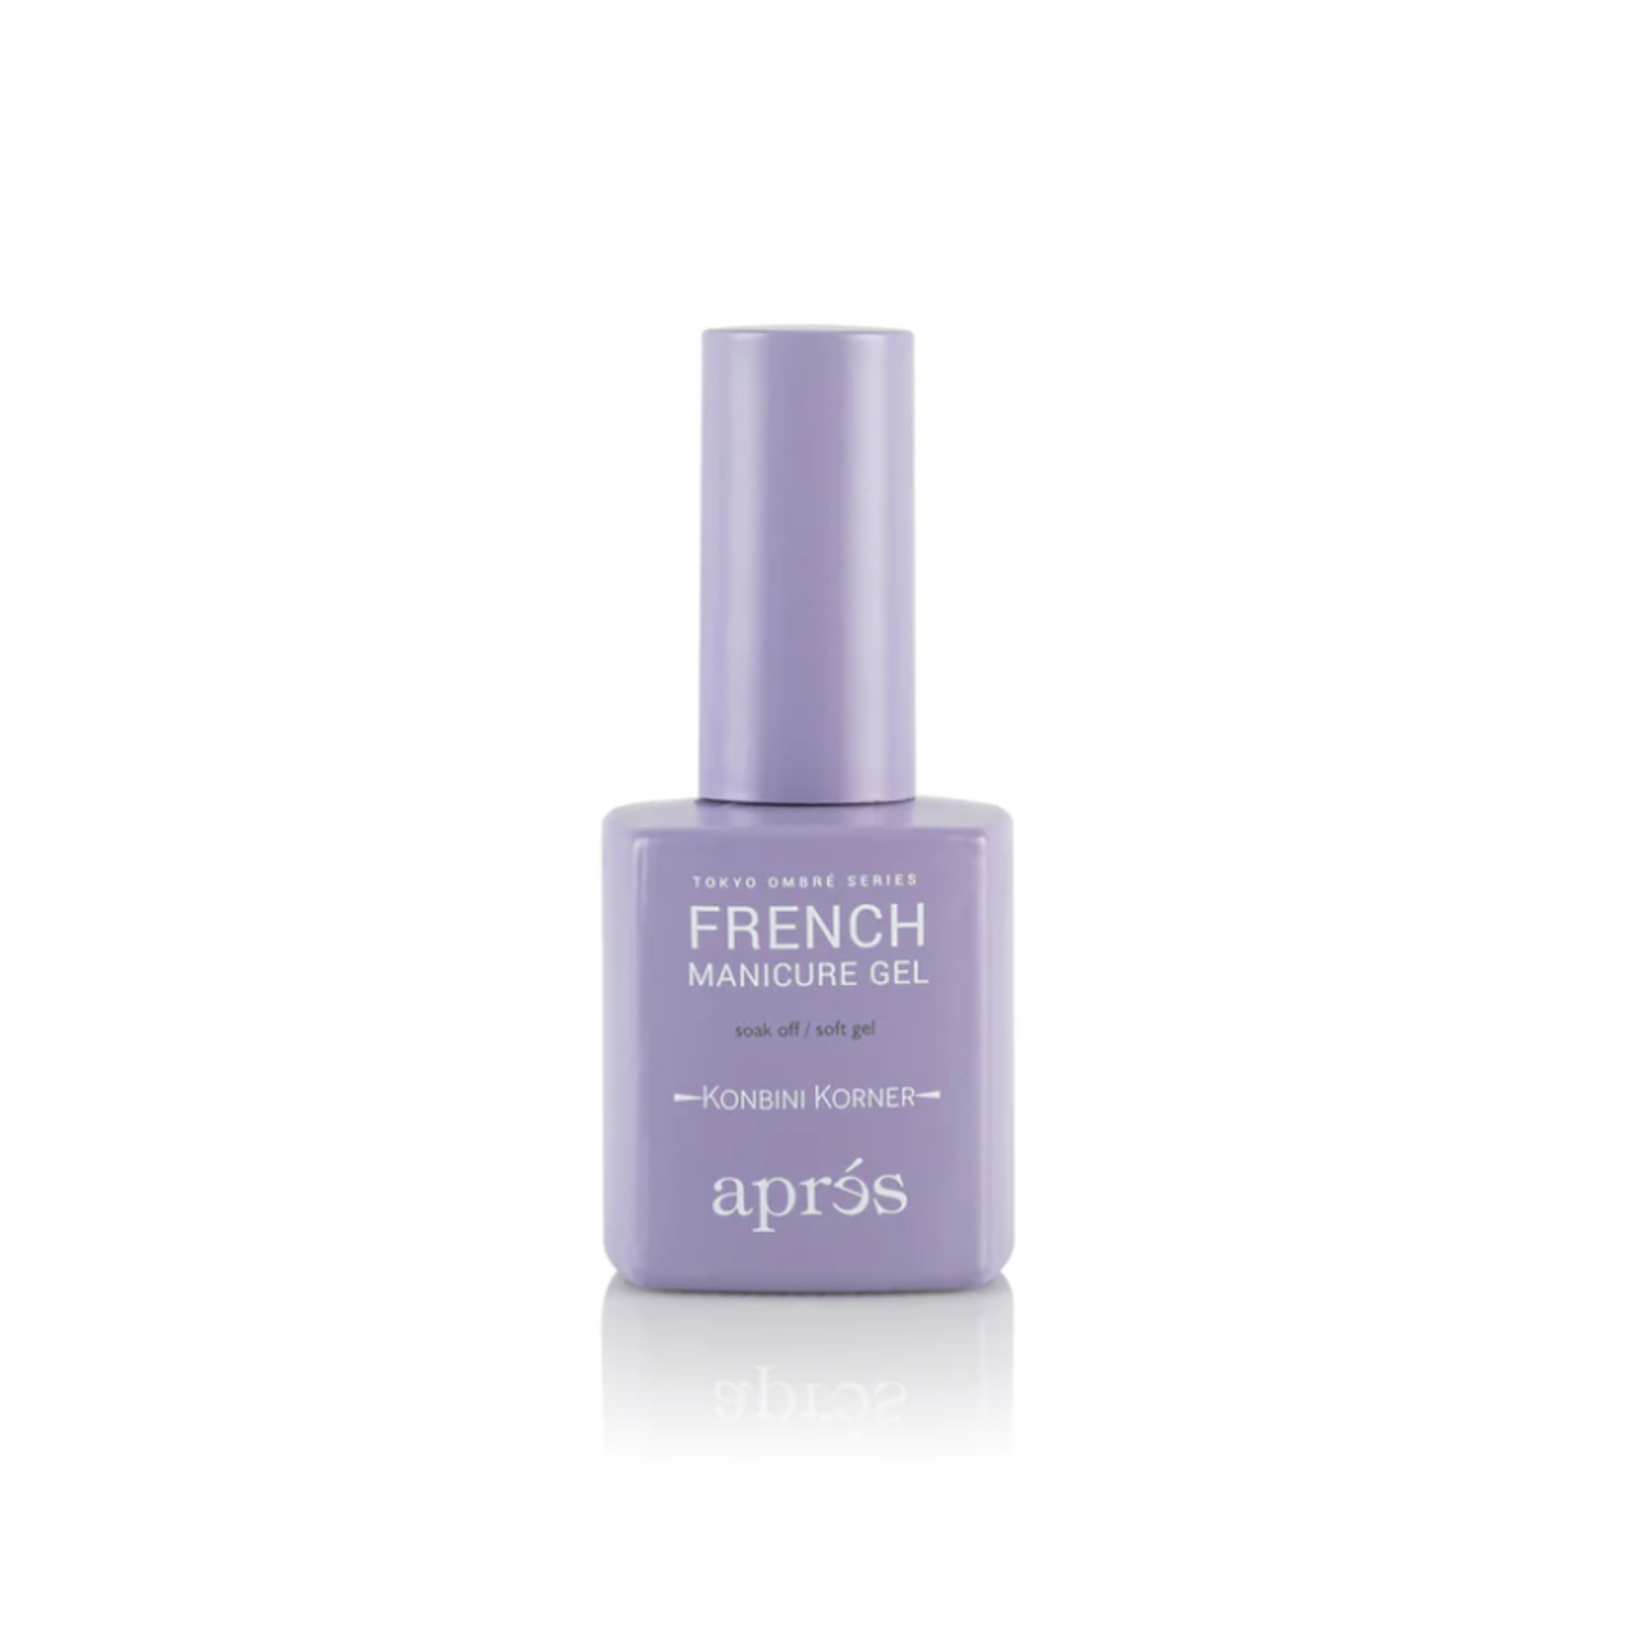 Apres Apres - French Manicure Gel - 119 Konbini Korner - 0.5 oz